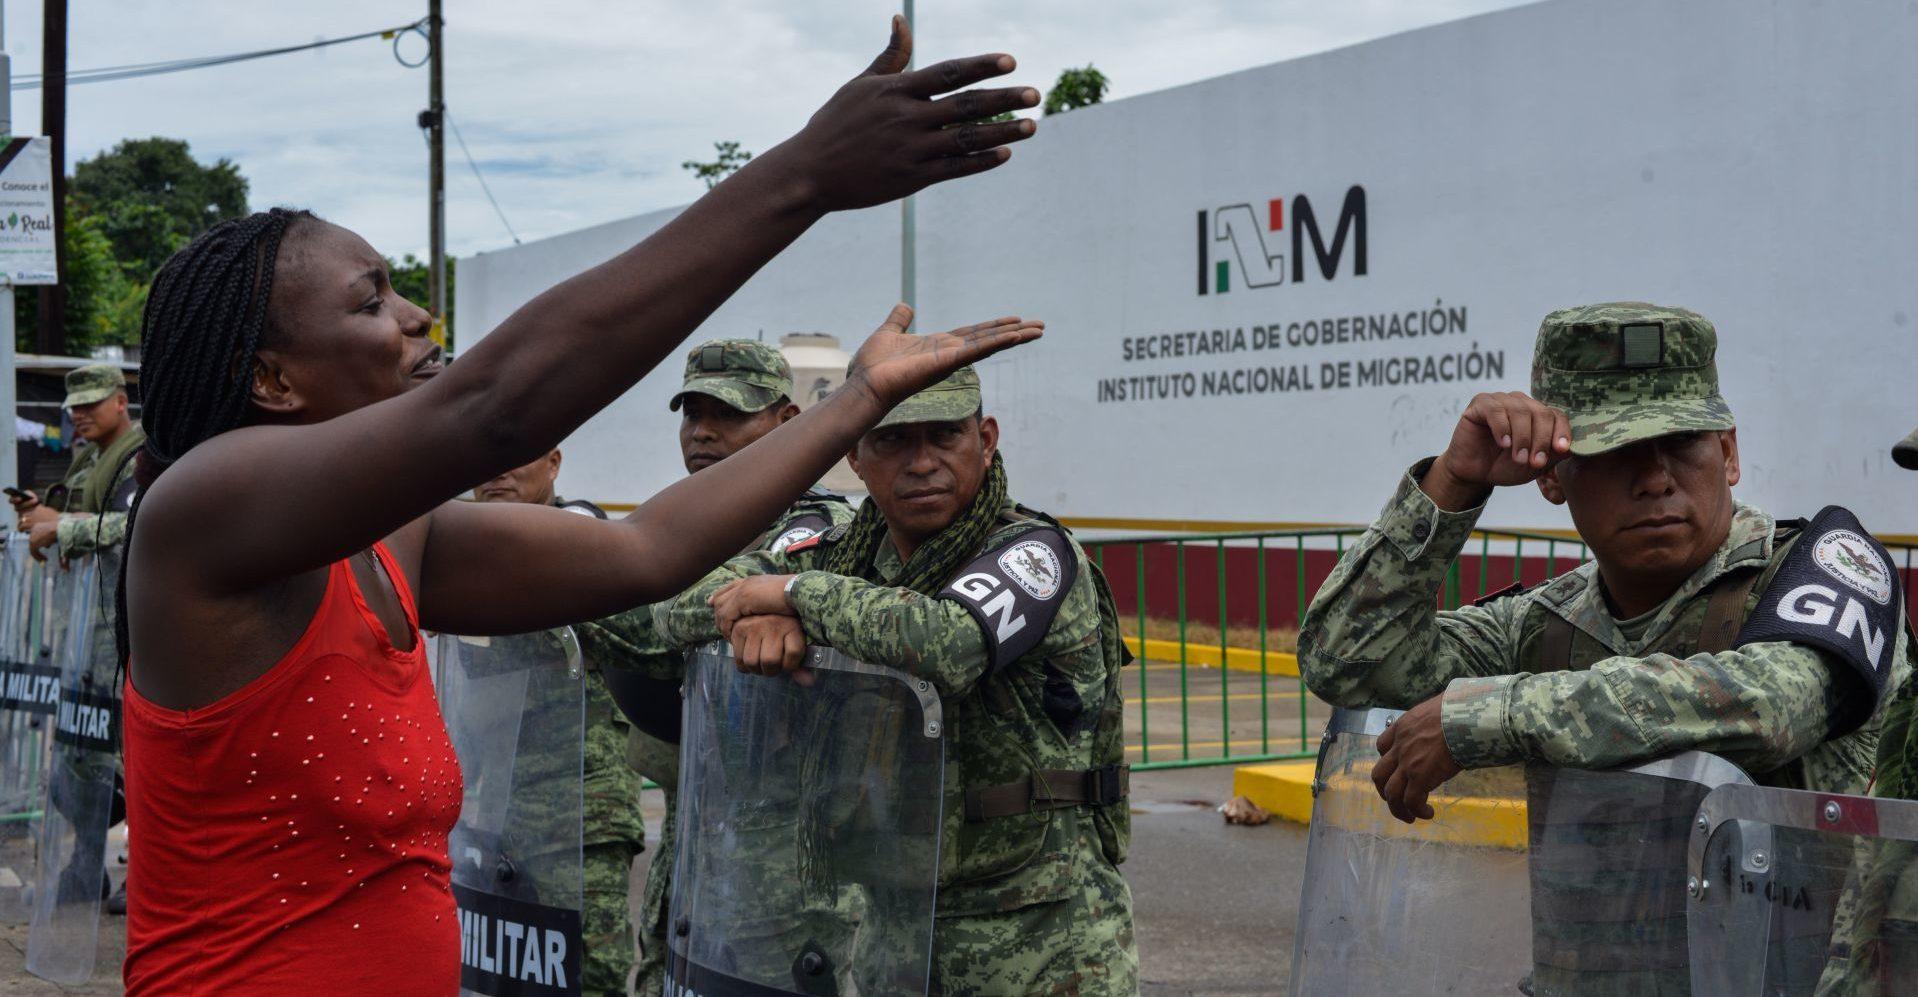 Muñoz Ledo acusa maltrato a migrantes y que la visita que organizó el INM para diputados fue una burla